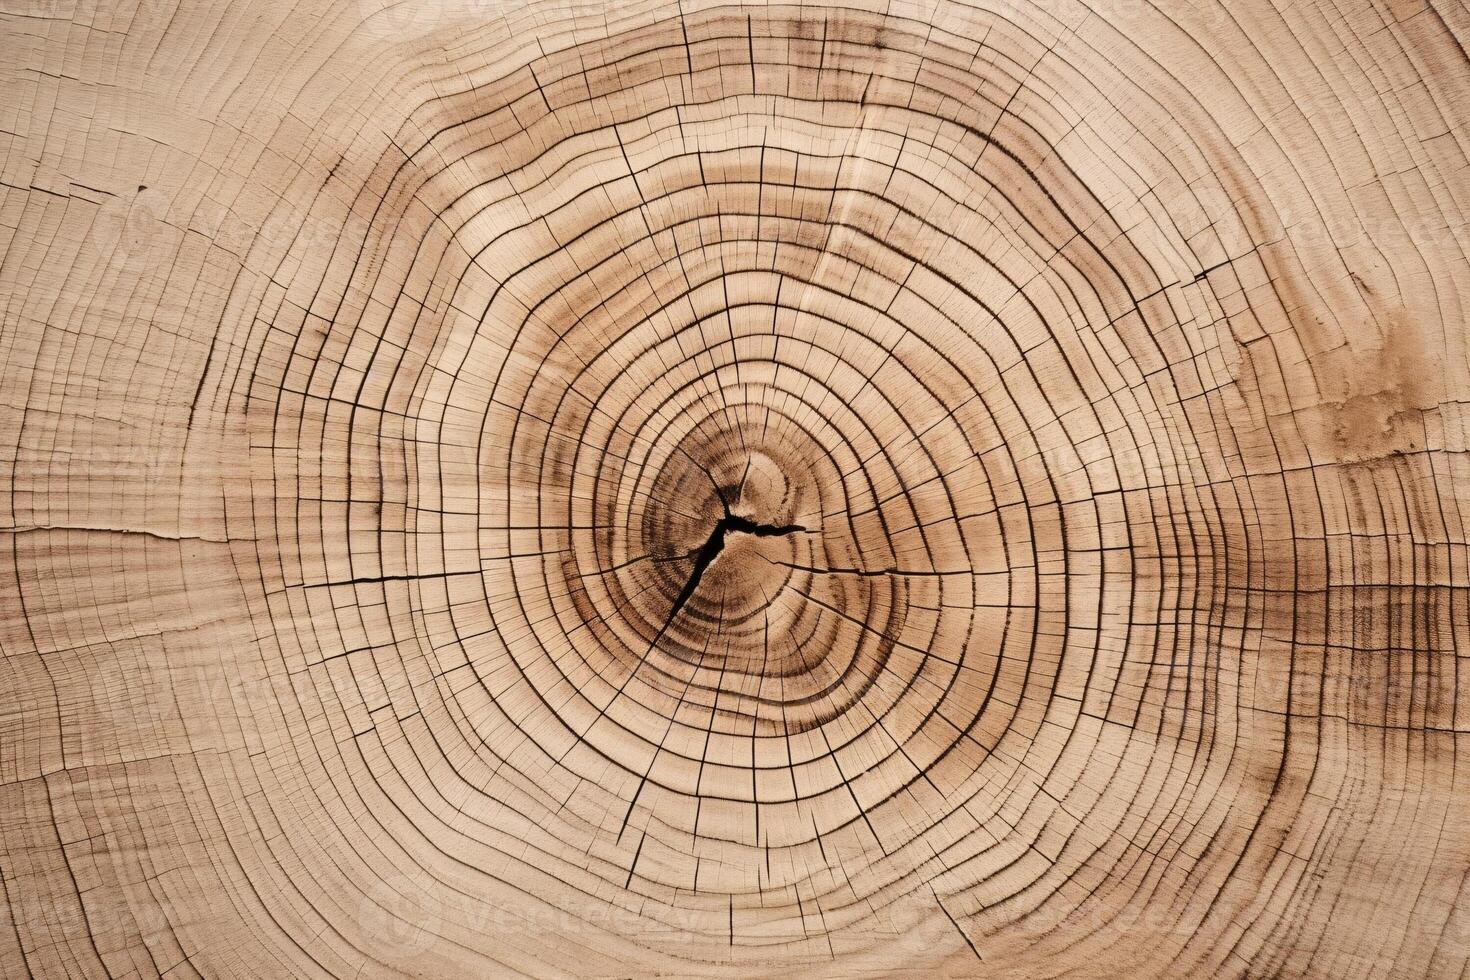 tagliare legna struttura, tagliare legna sfondo, albero tronco sfondo, di legno tagliare struttura, legna sfondo, circolare legna fetta struttura, foto